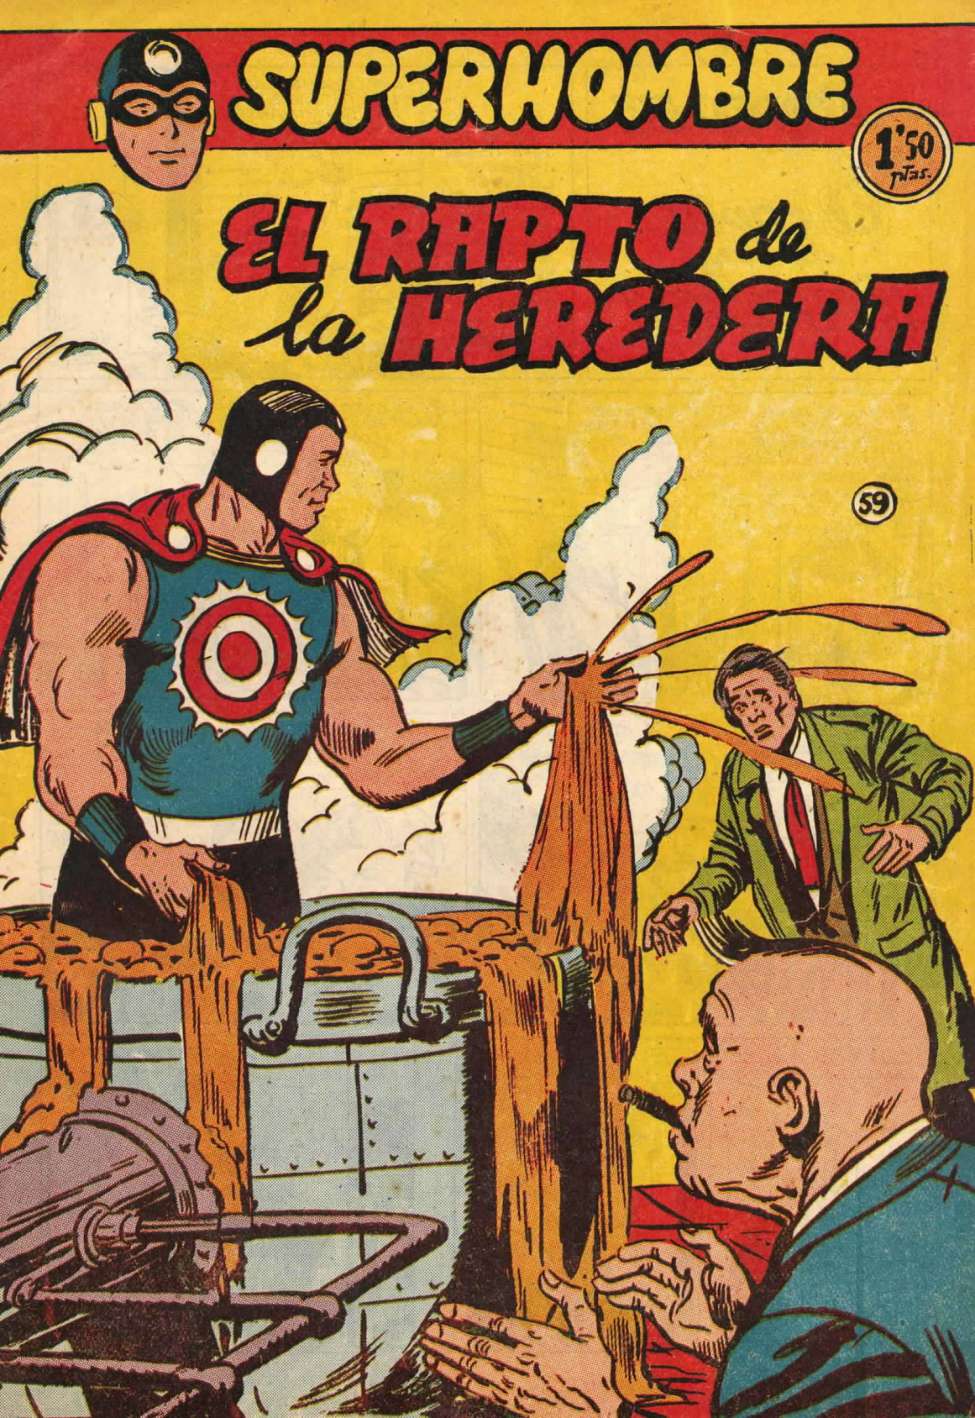 Book Cover For SuperHombre 59 El rapto de la heredera